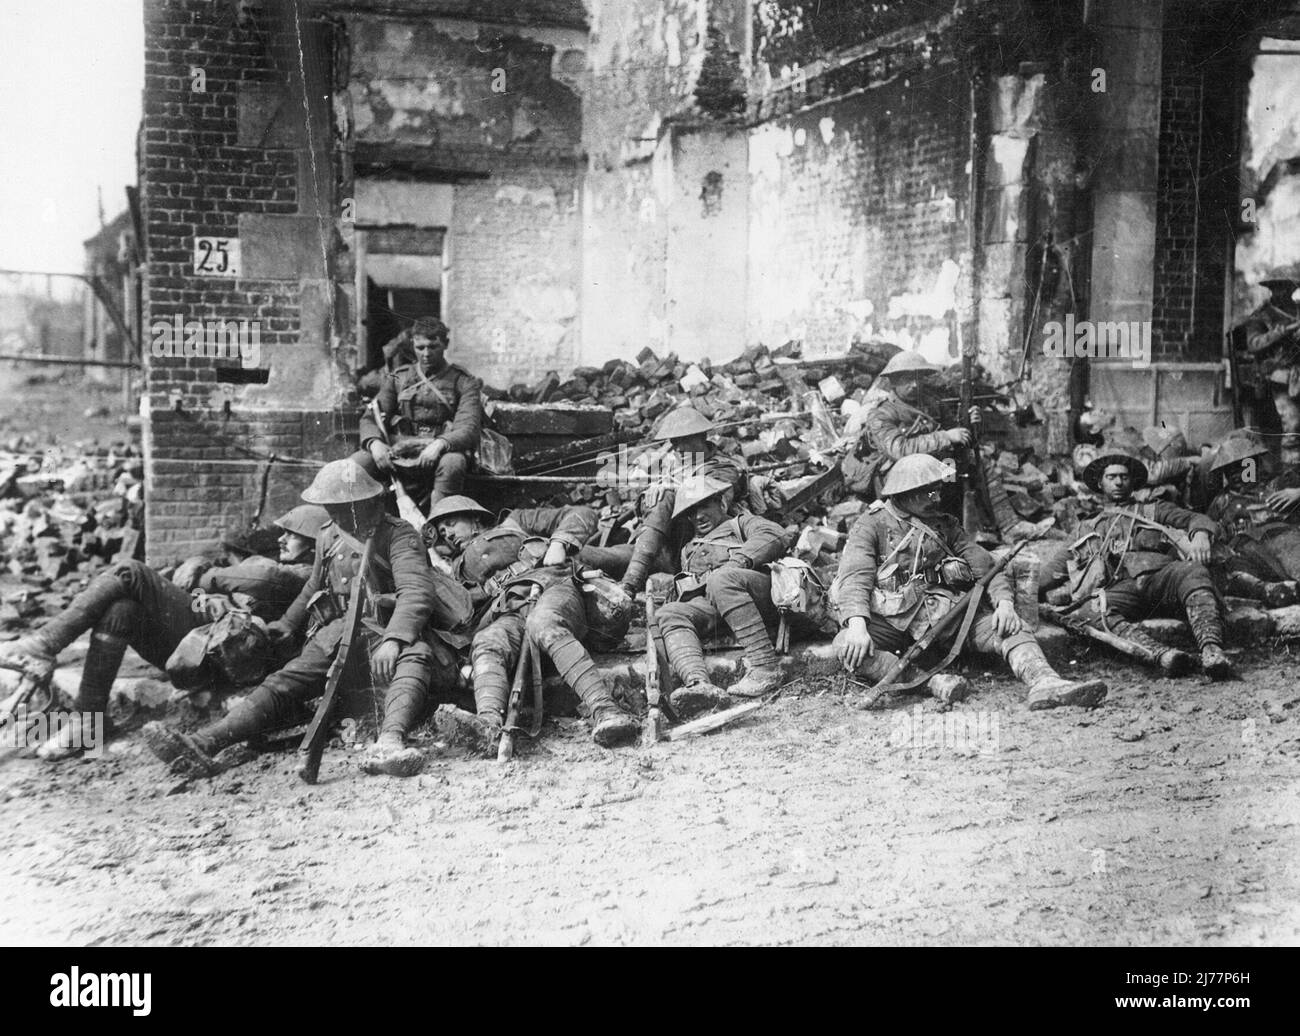 Während des Ersten Weltkriegs ruhende Truppen in Peronne, Frankreich. Soldaten legen sich alle nieder oder schlagen gegen den Boden eines Schutthauses. Sie sind alle voll ausgestattet und bewaffnet. Die meisten von ihnen scheinen zu schlafen. Stockfoto